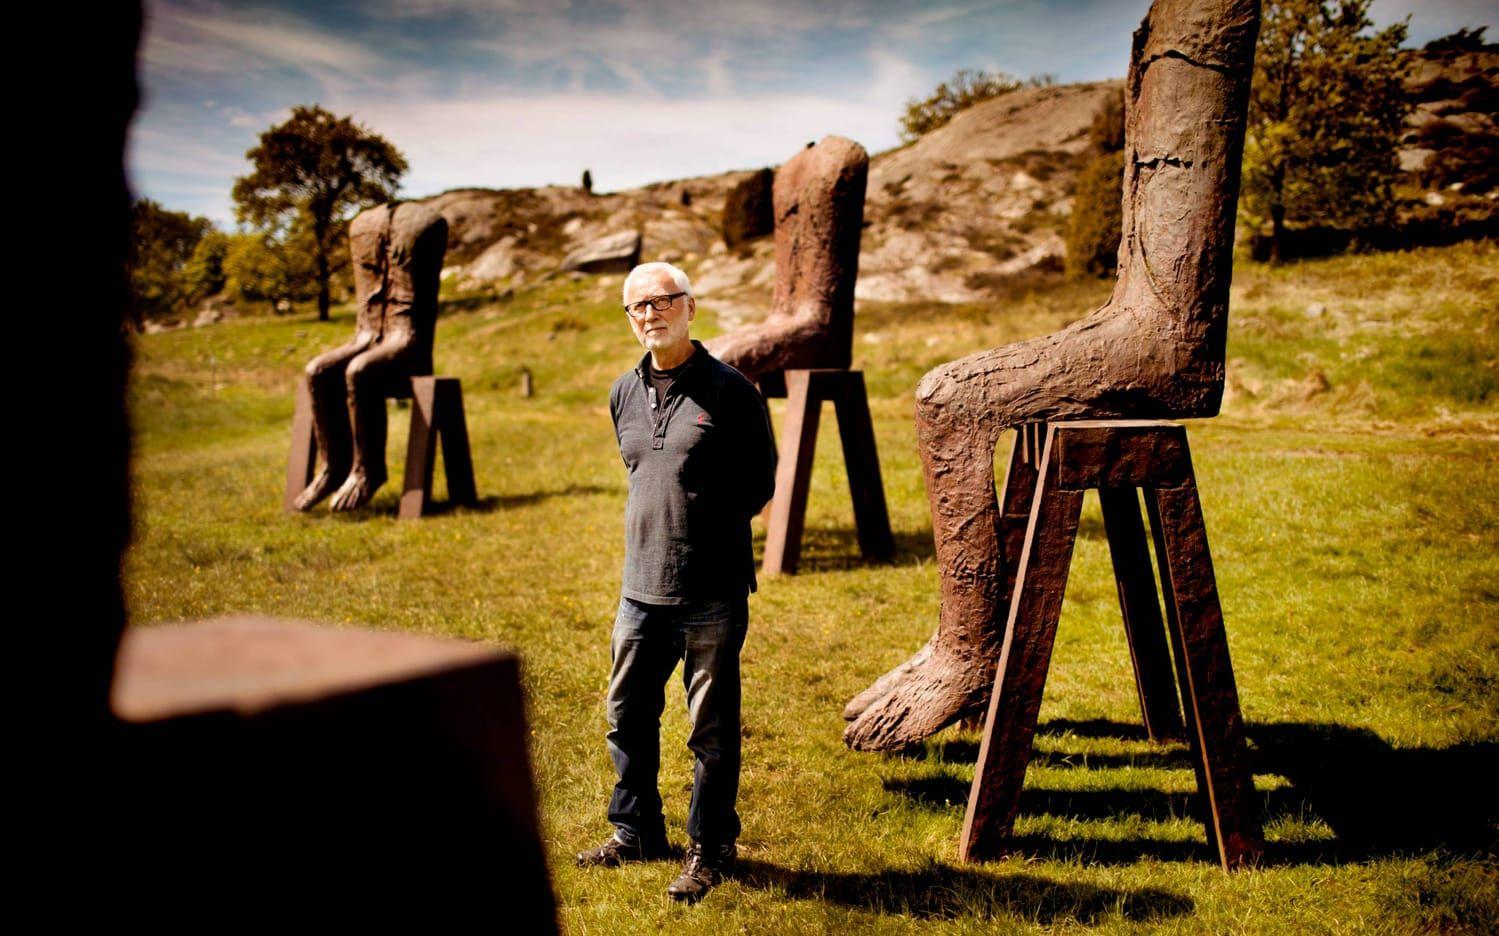 Tio stadiga figurer i en ring. Peter Lennby,från Pilane skulptur, visar Magdalena Abajabiwucz verk av gjutjärn. Bild: Per Wahlberg